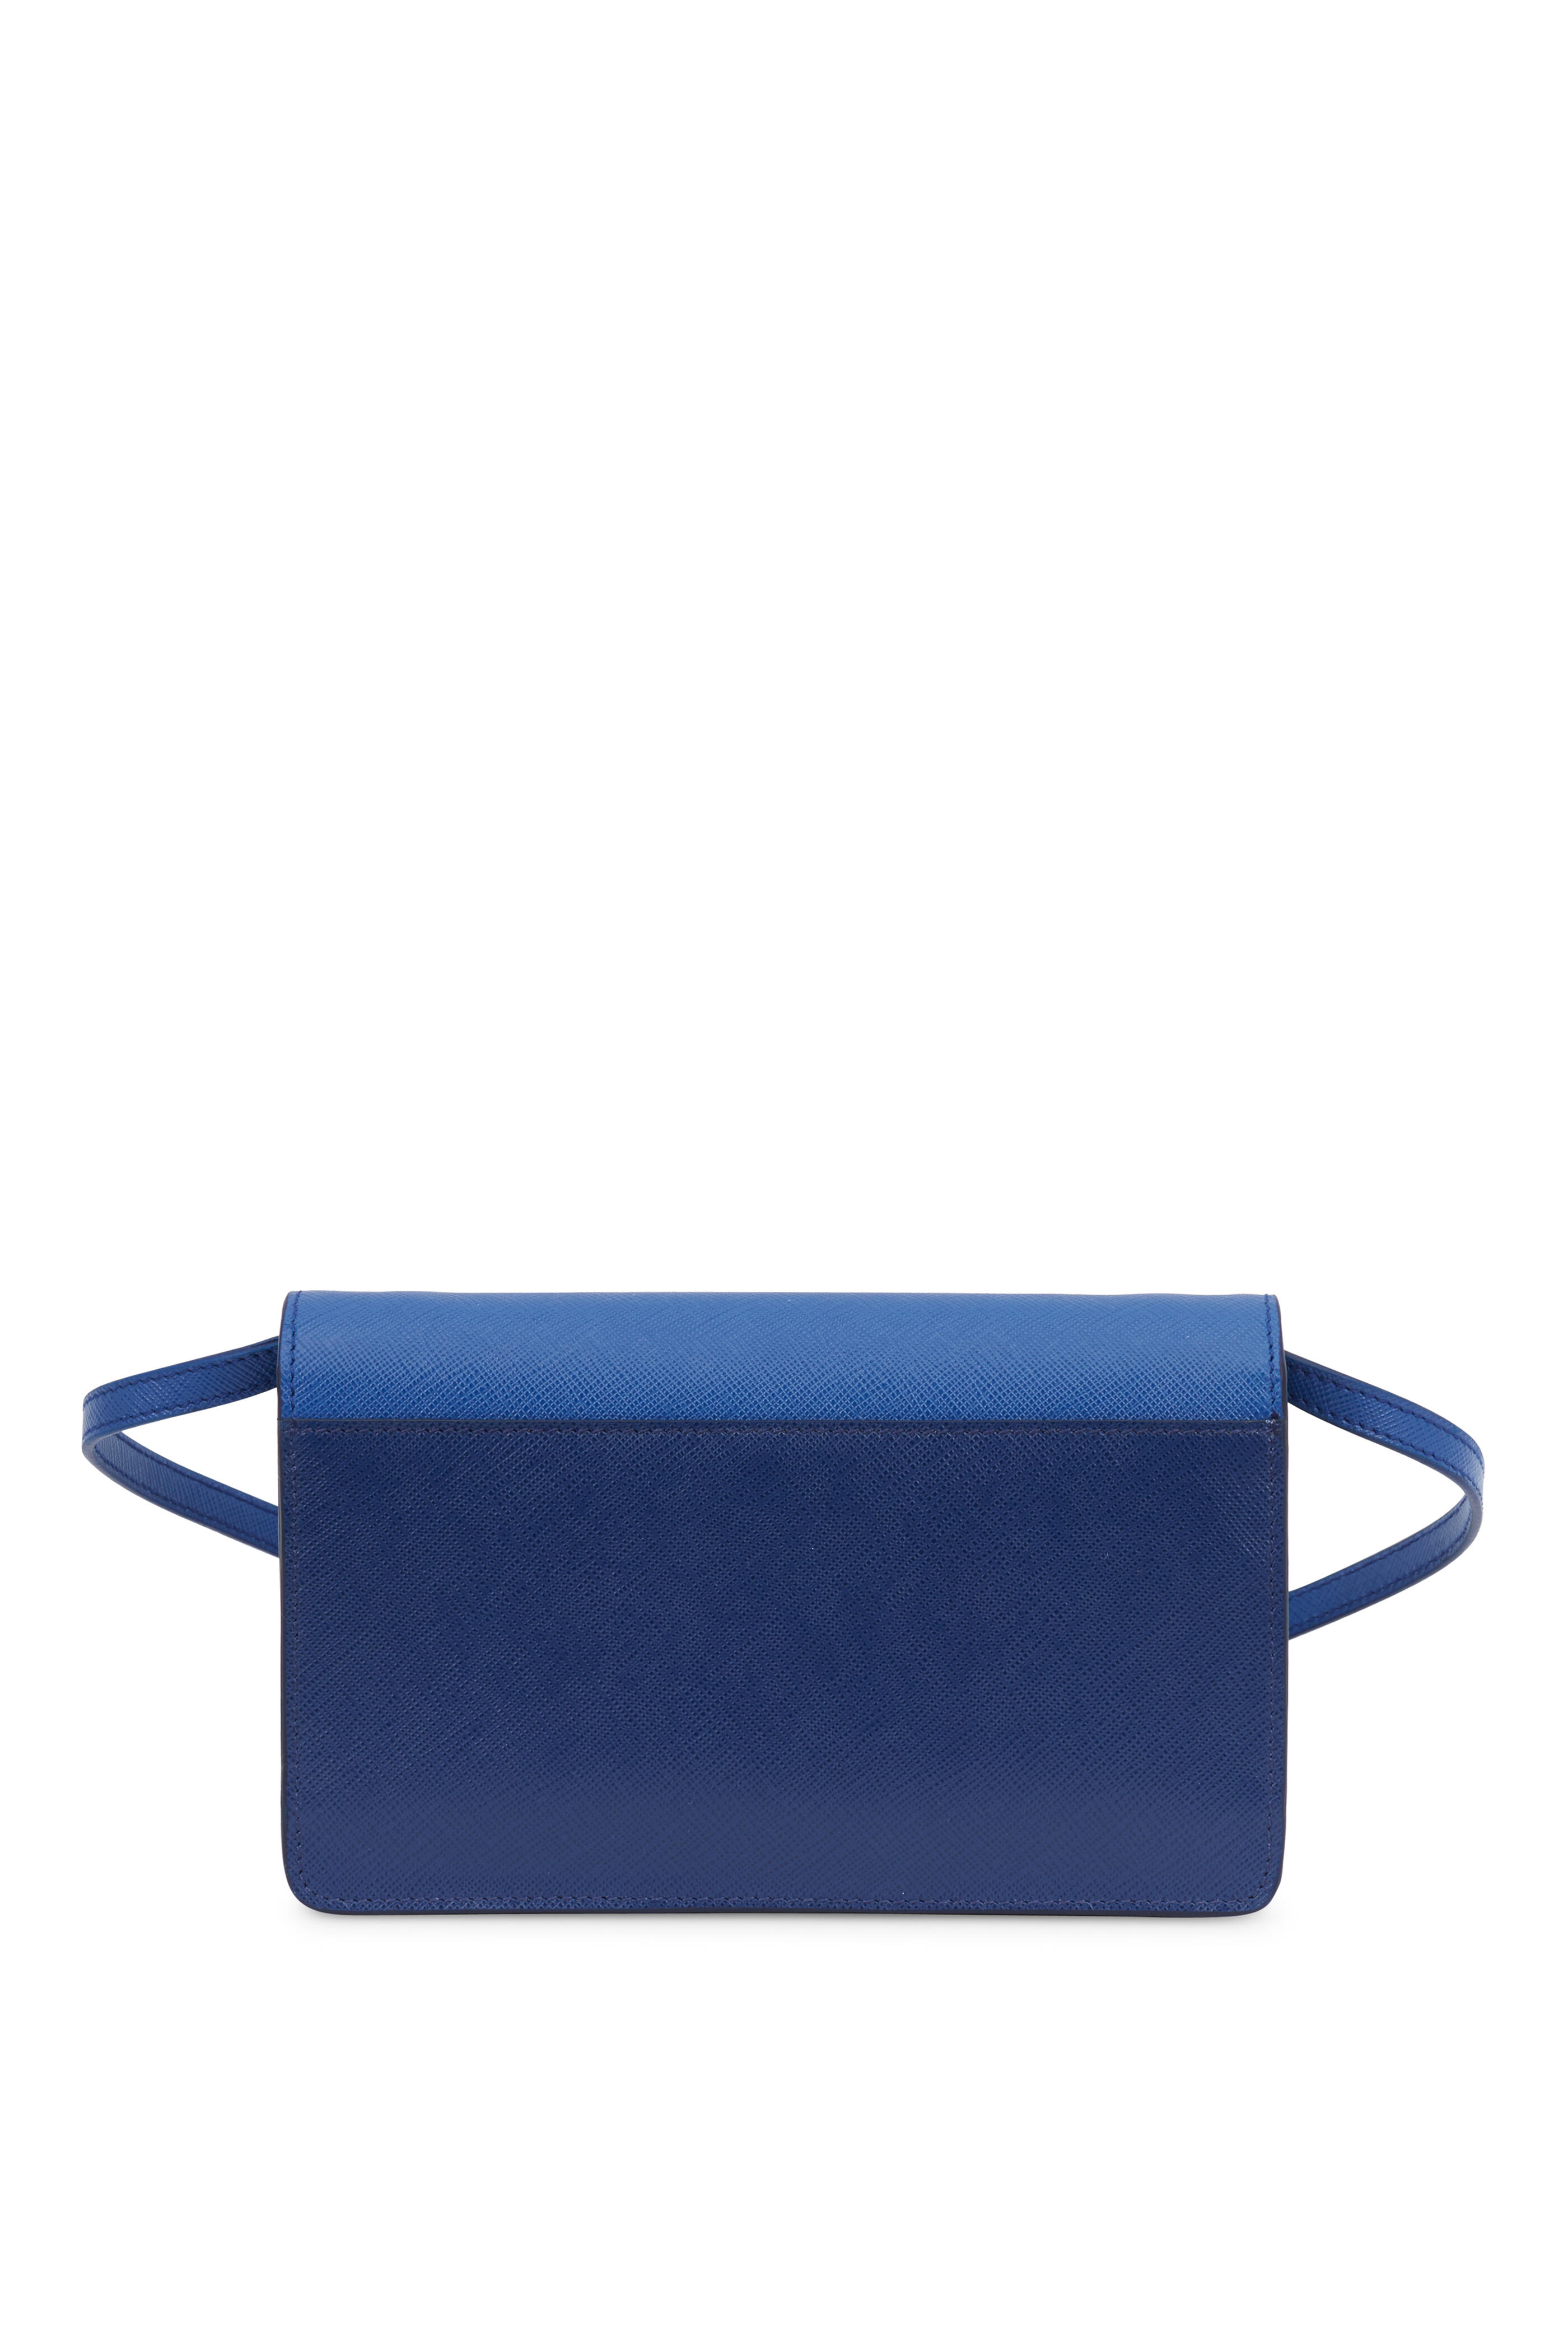 Prada Saffiano Leather Blue Clutch Bag